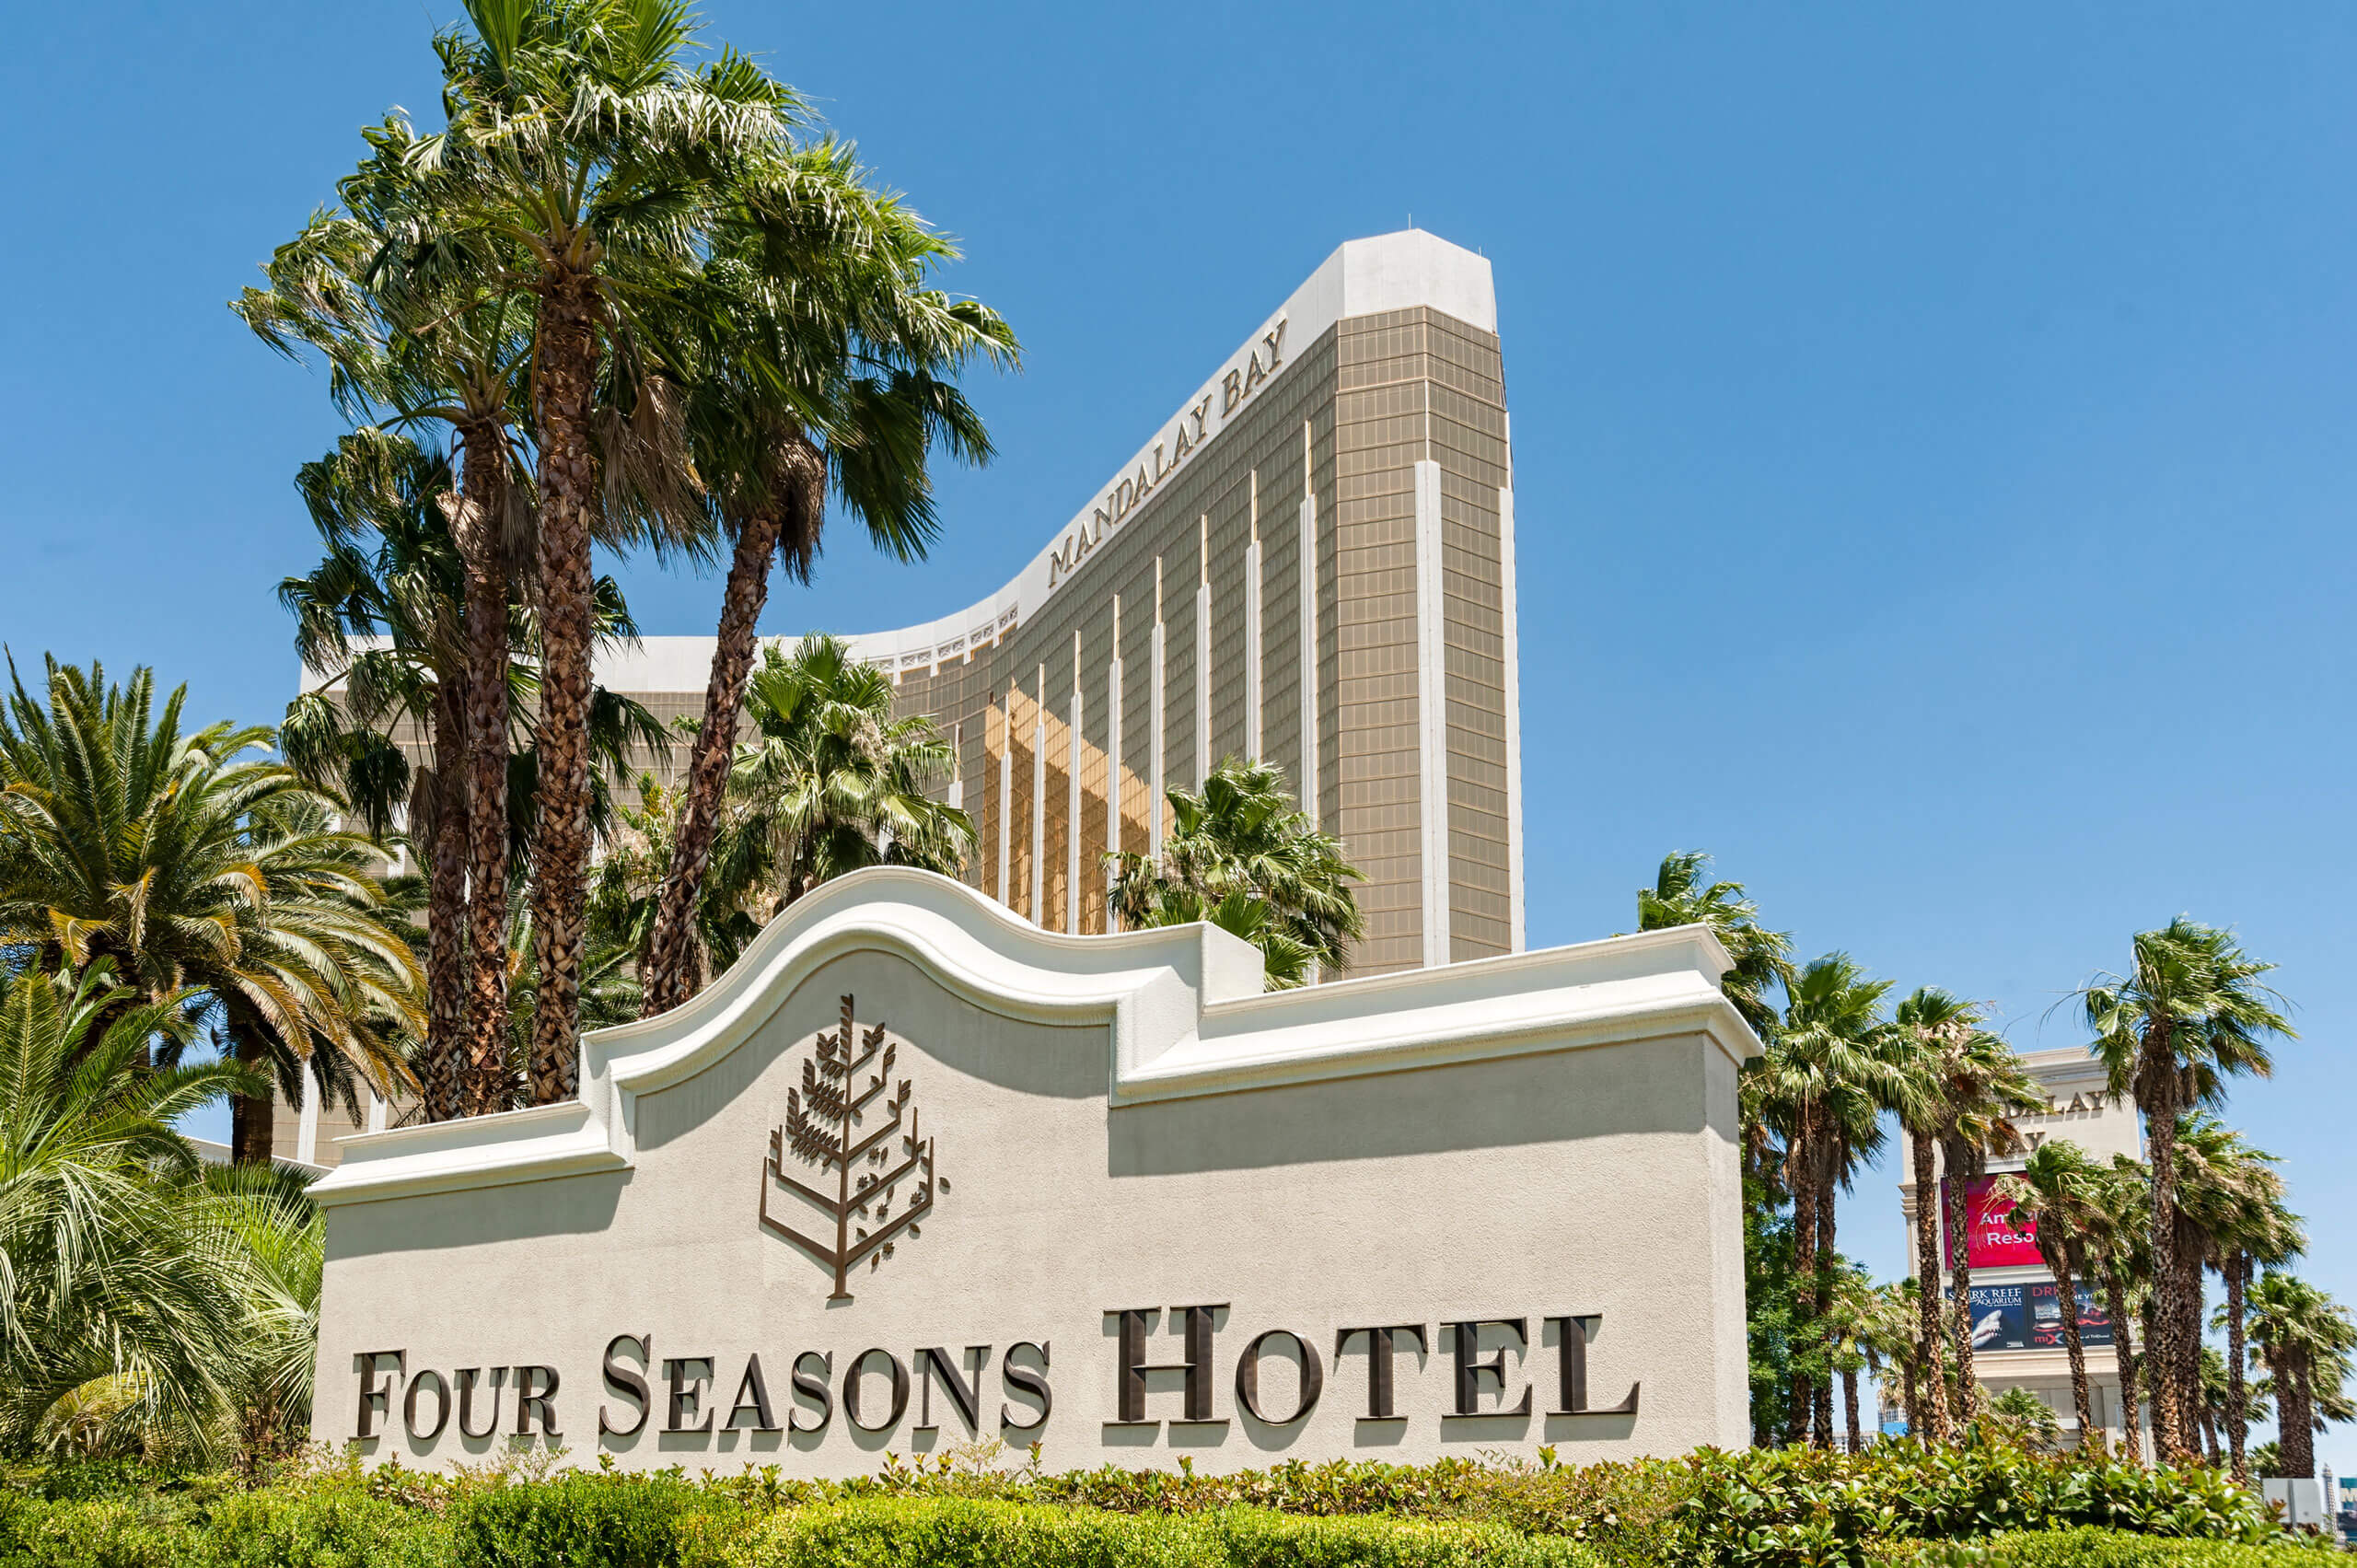 The Four Seasons Las Vegas